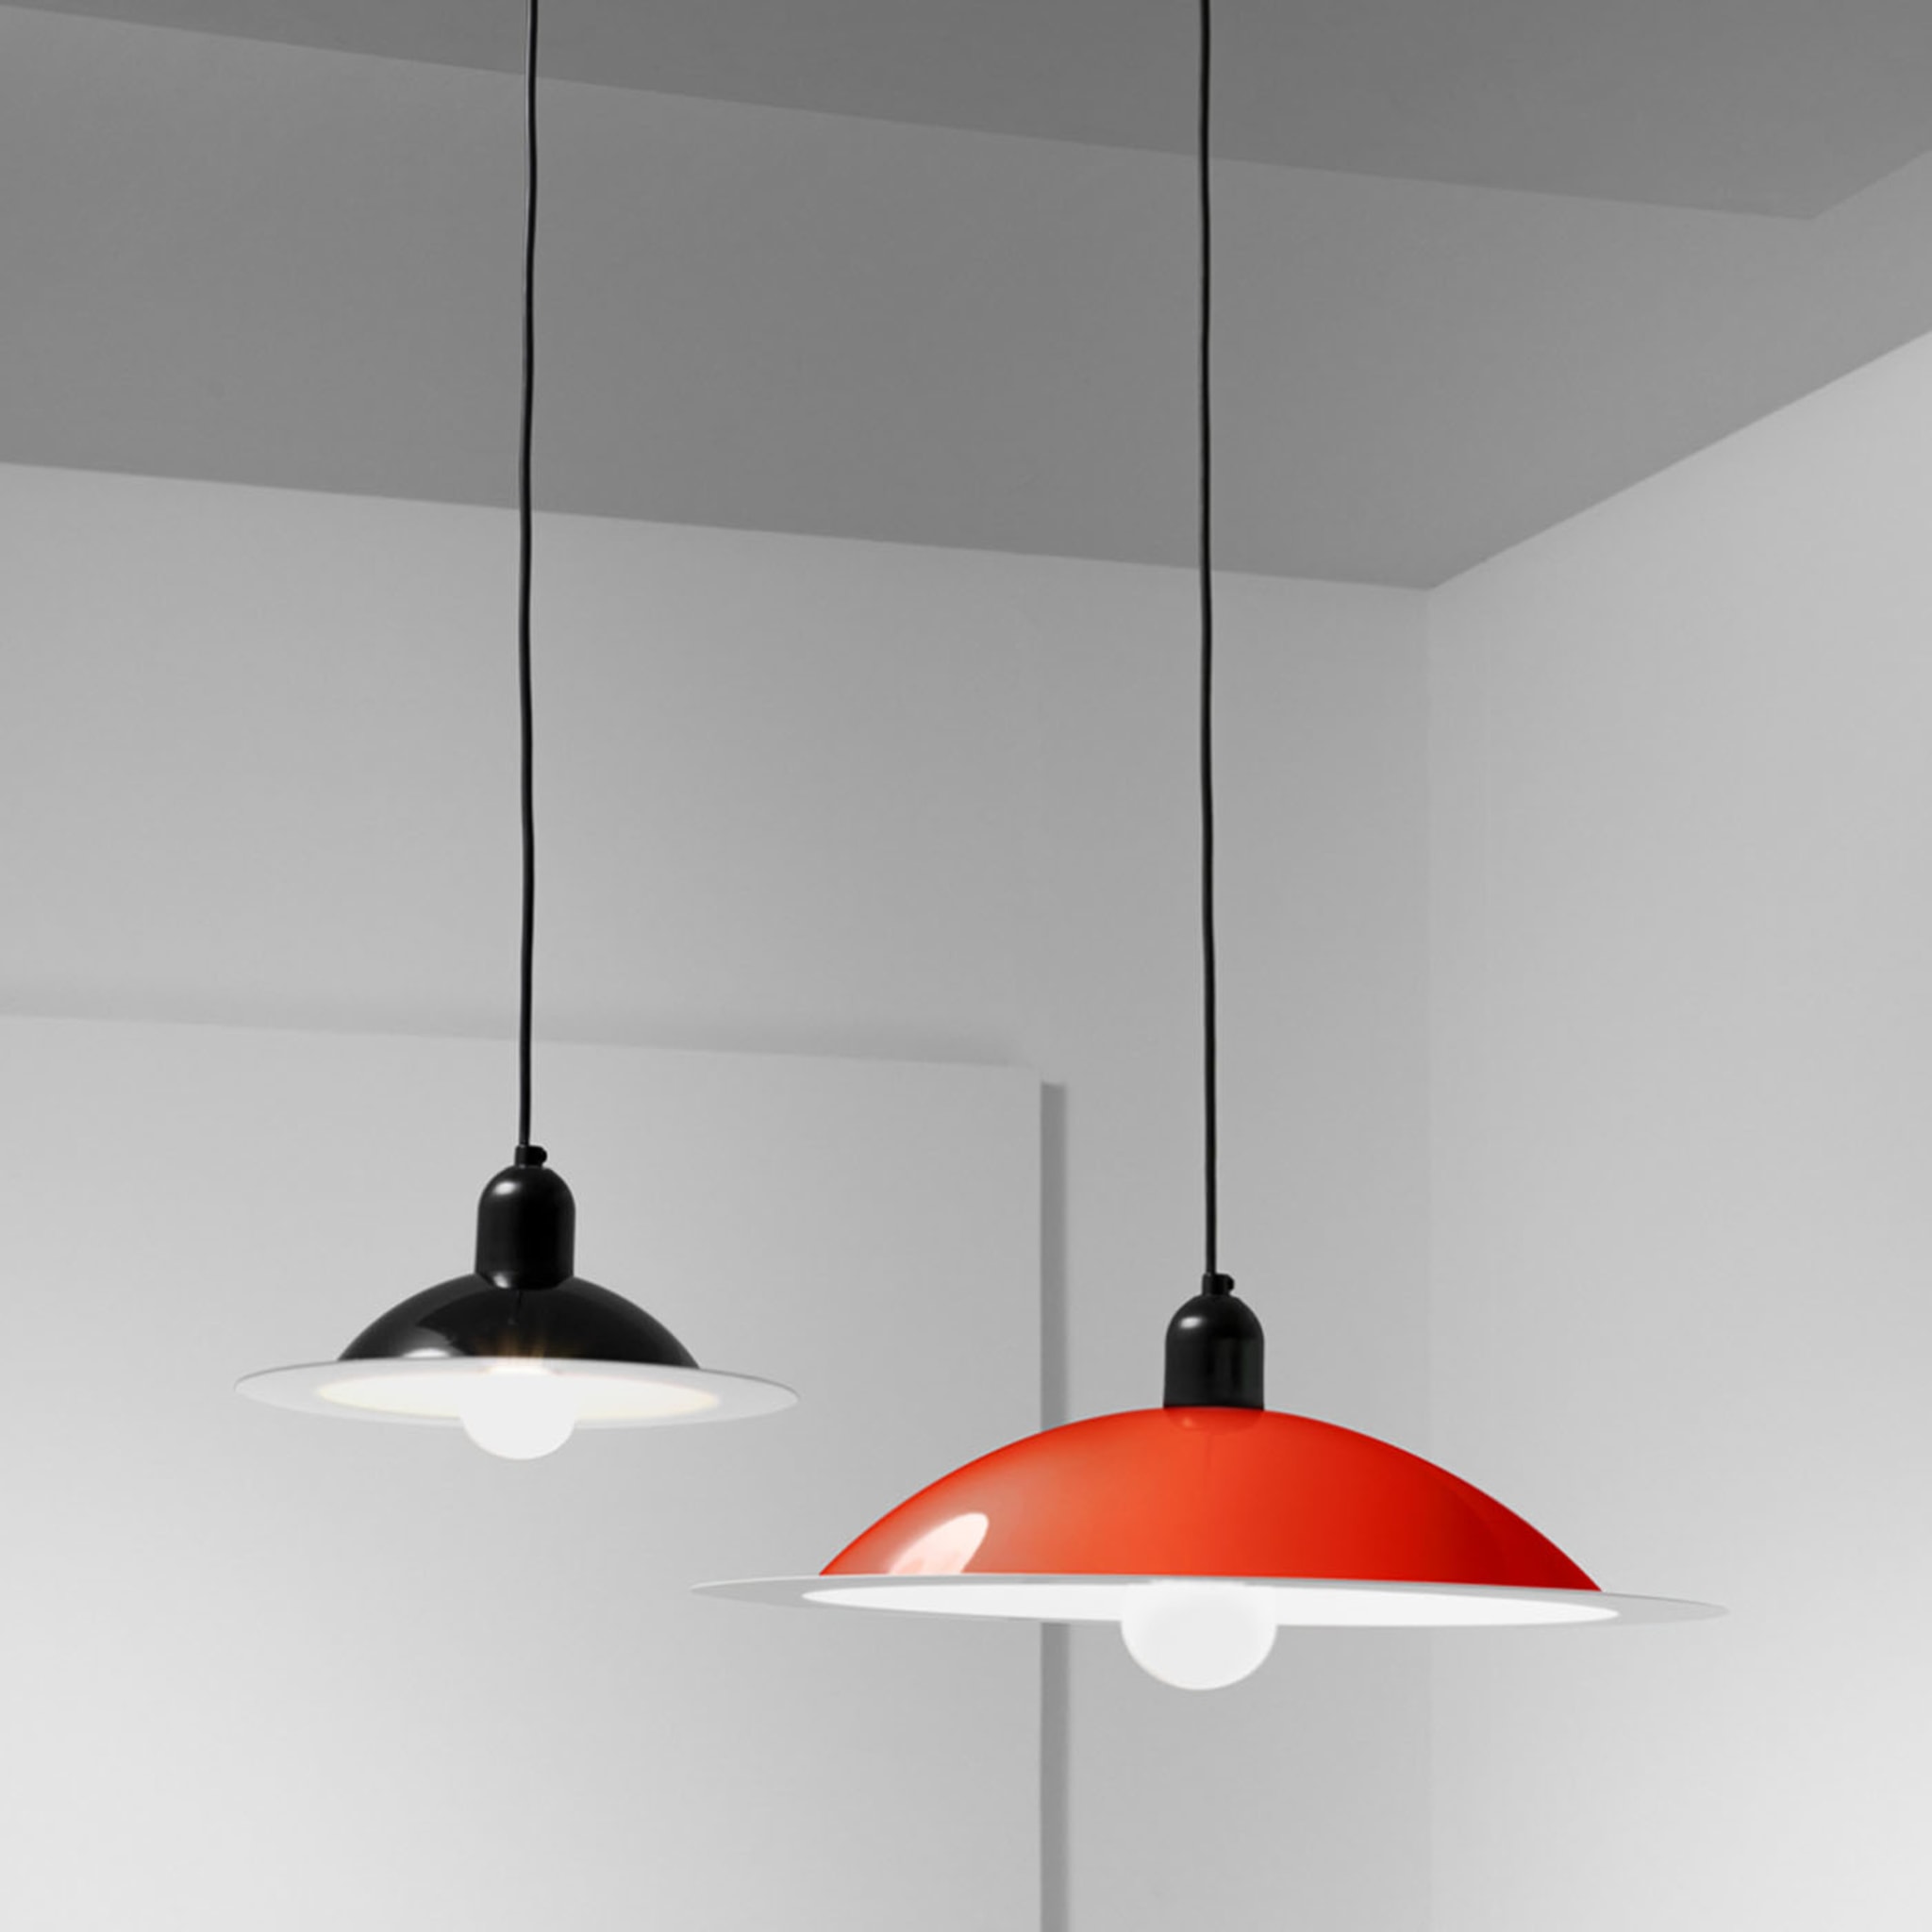 Lampiatta Small Red Pendant Lamp - Alternative view 1